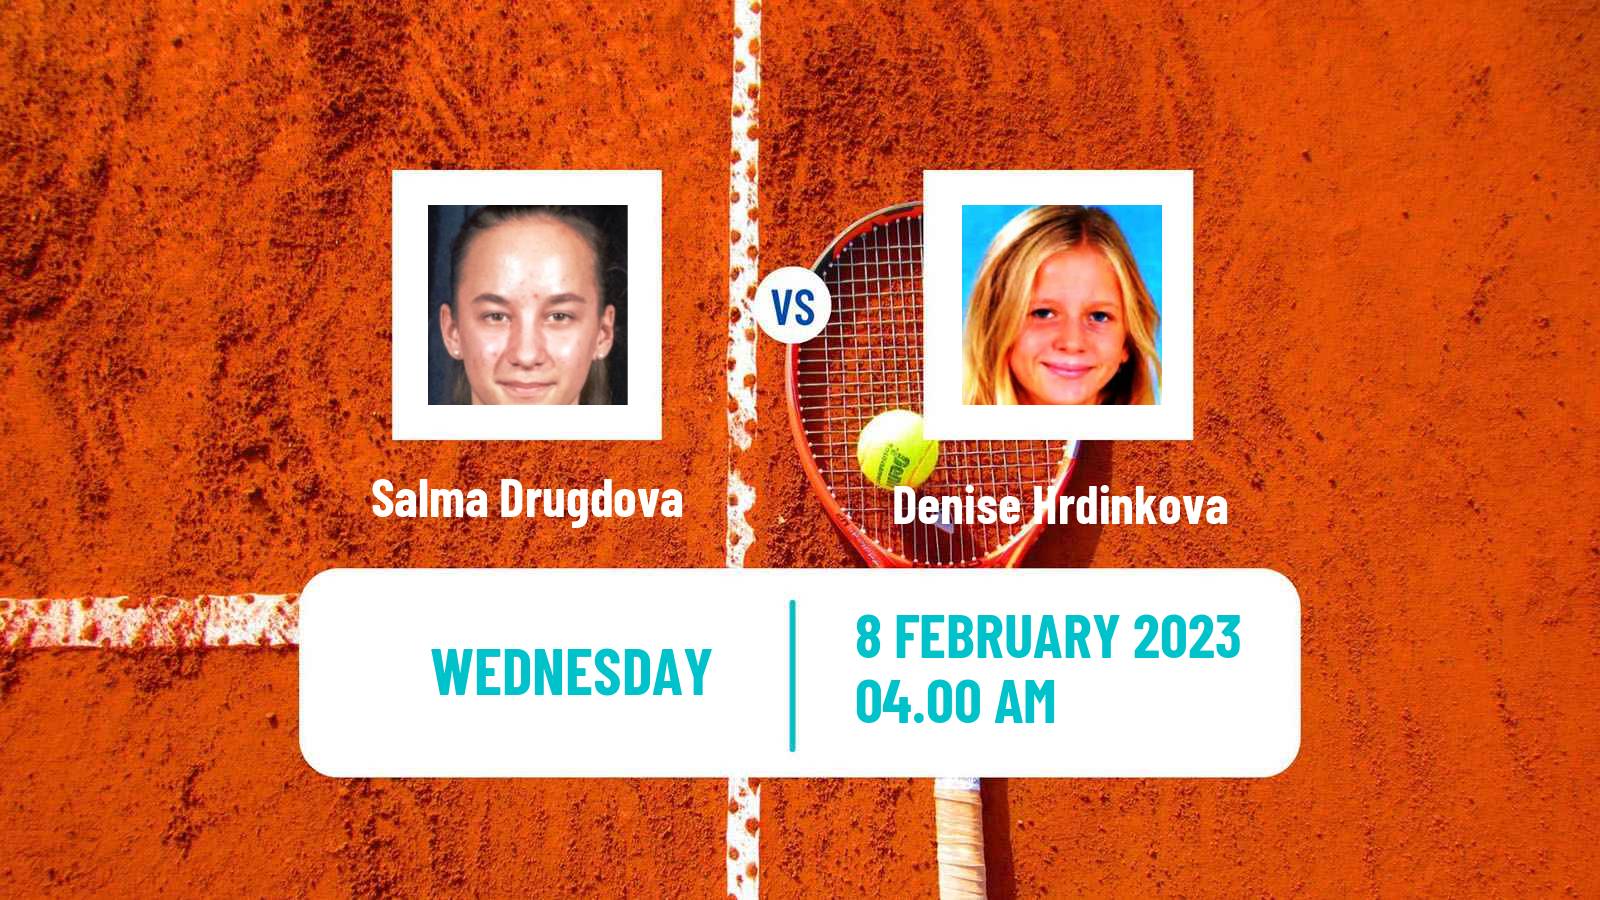 Tennis ITF Tournaments Salma Drugdova - Denise Hrdinkova